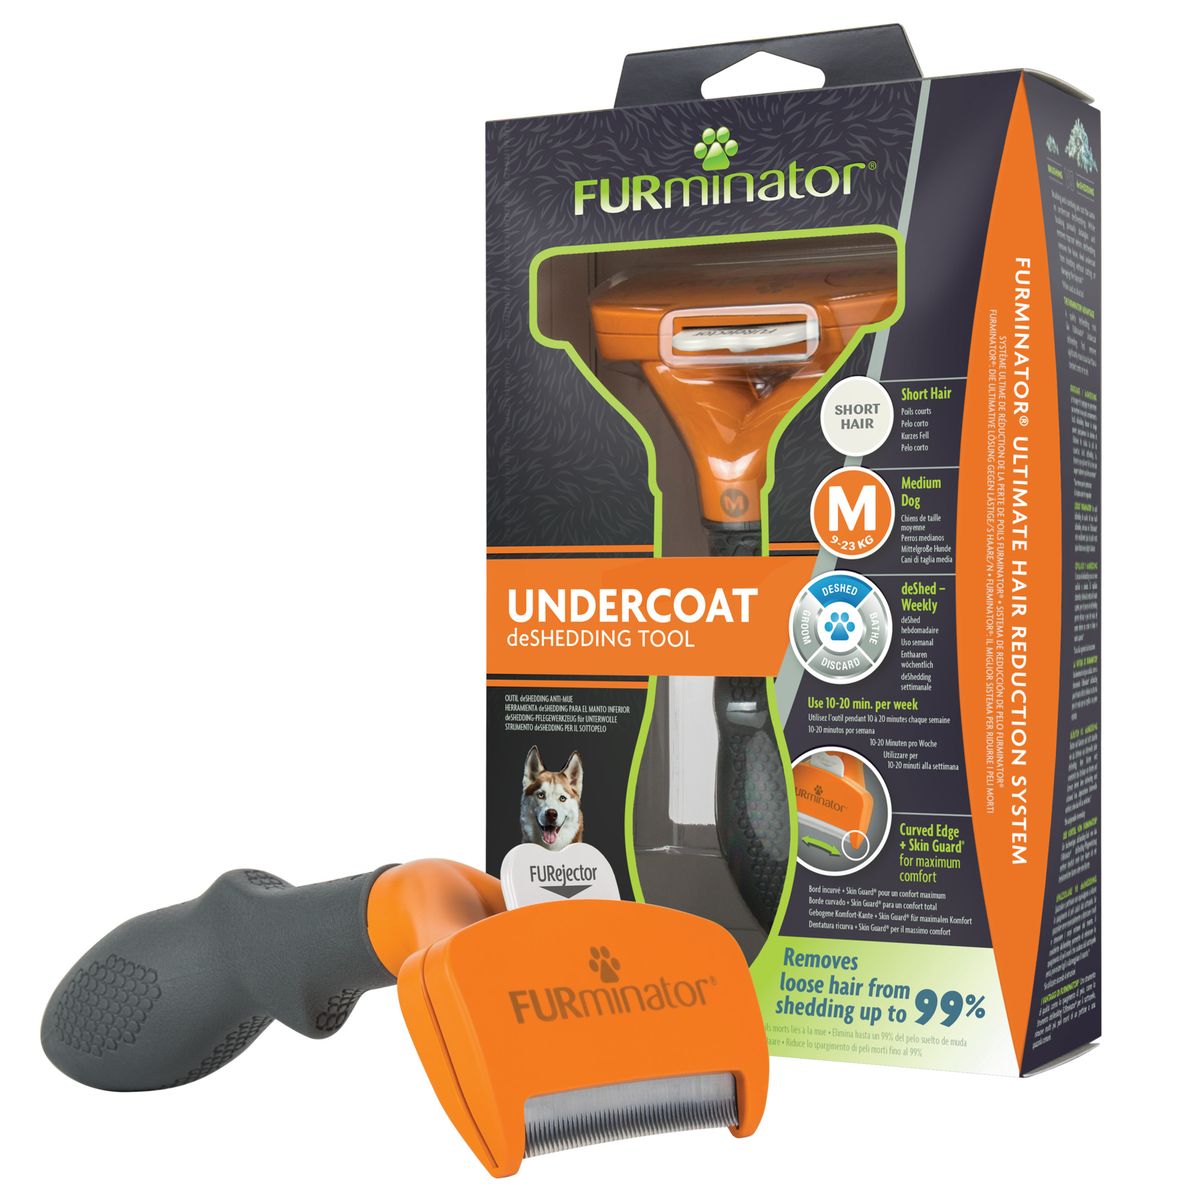 Review: The FURminator Undercoat Deshedding Tool